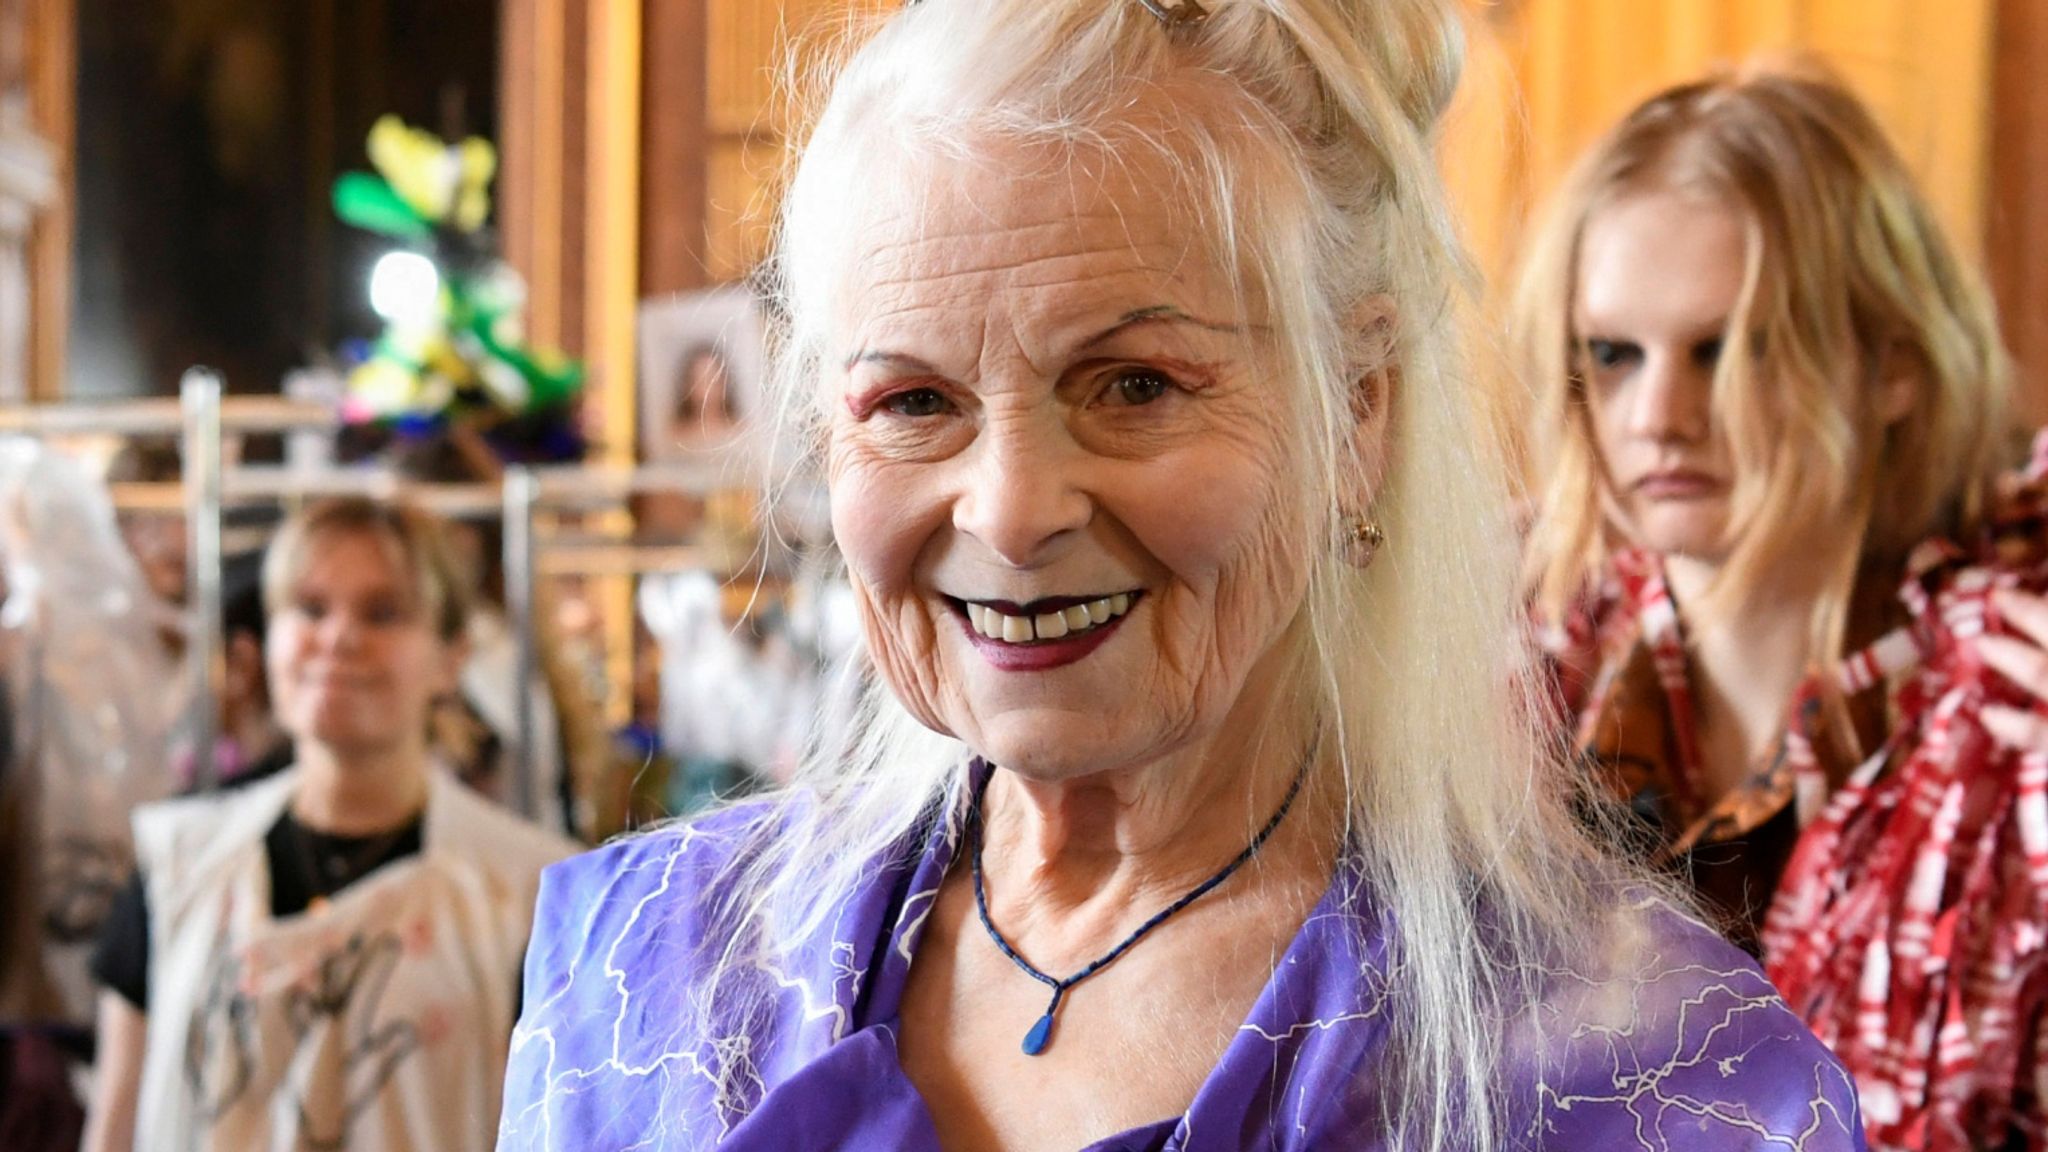 dame-vivienne-westwood-has-died-aged-81